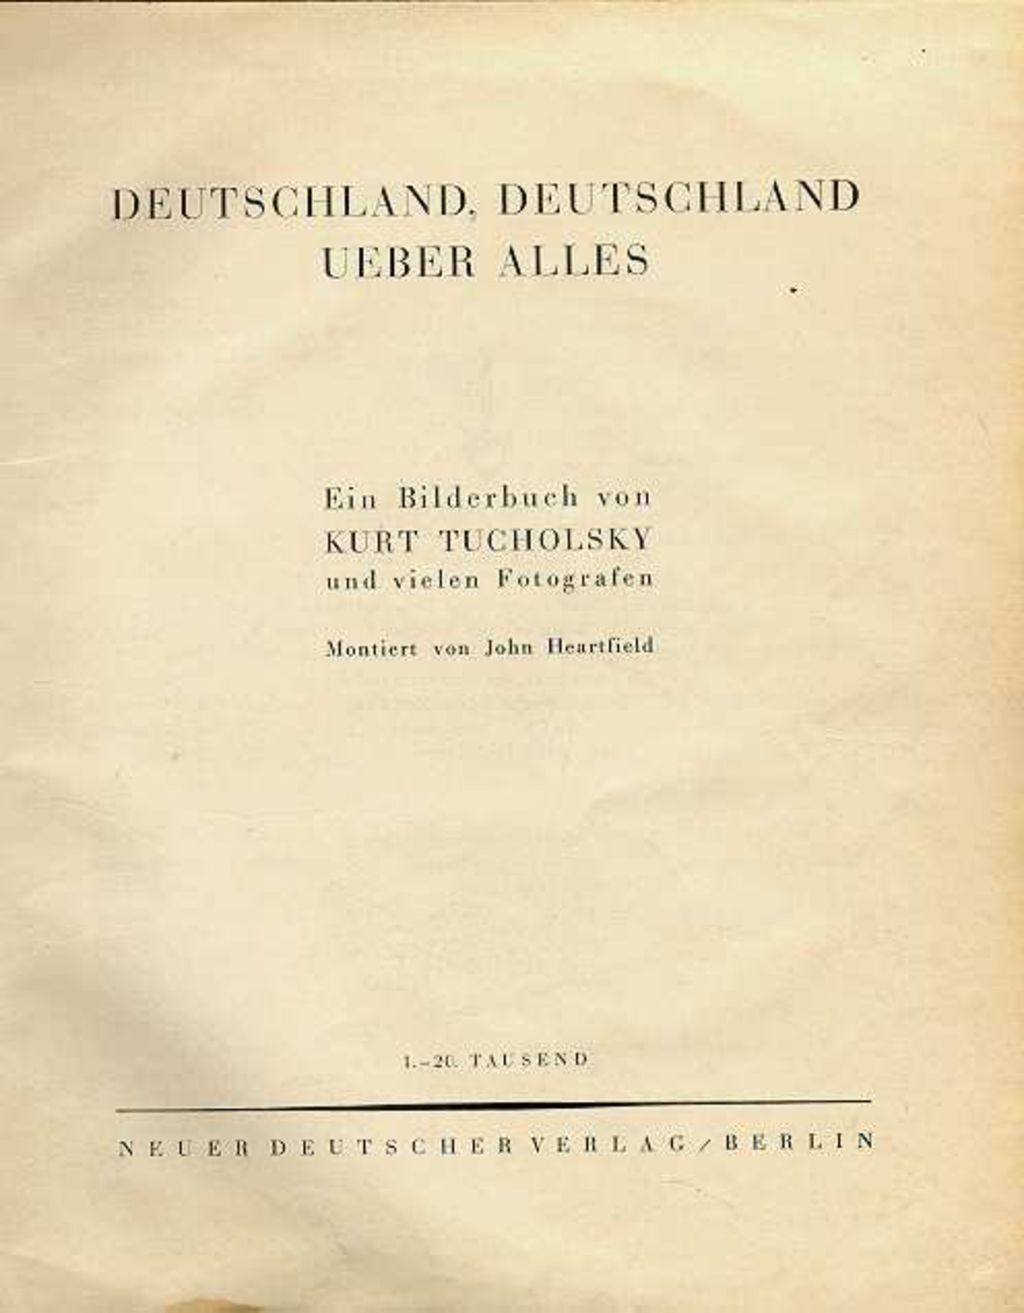 Exponat: Buch: Tucholsky, Kurt "Deutschland, Deutschland über alles", 1929